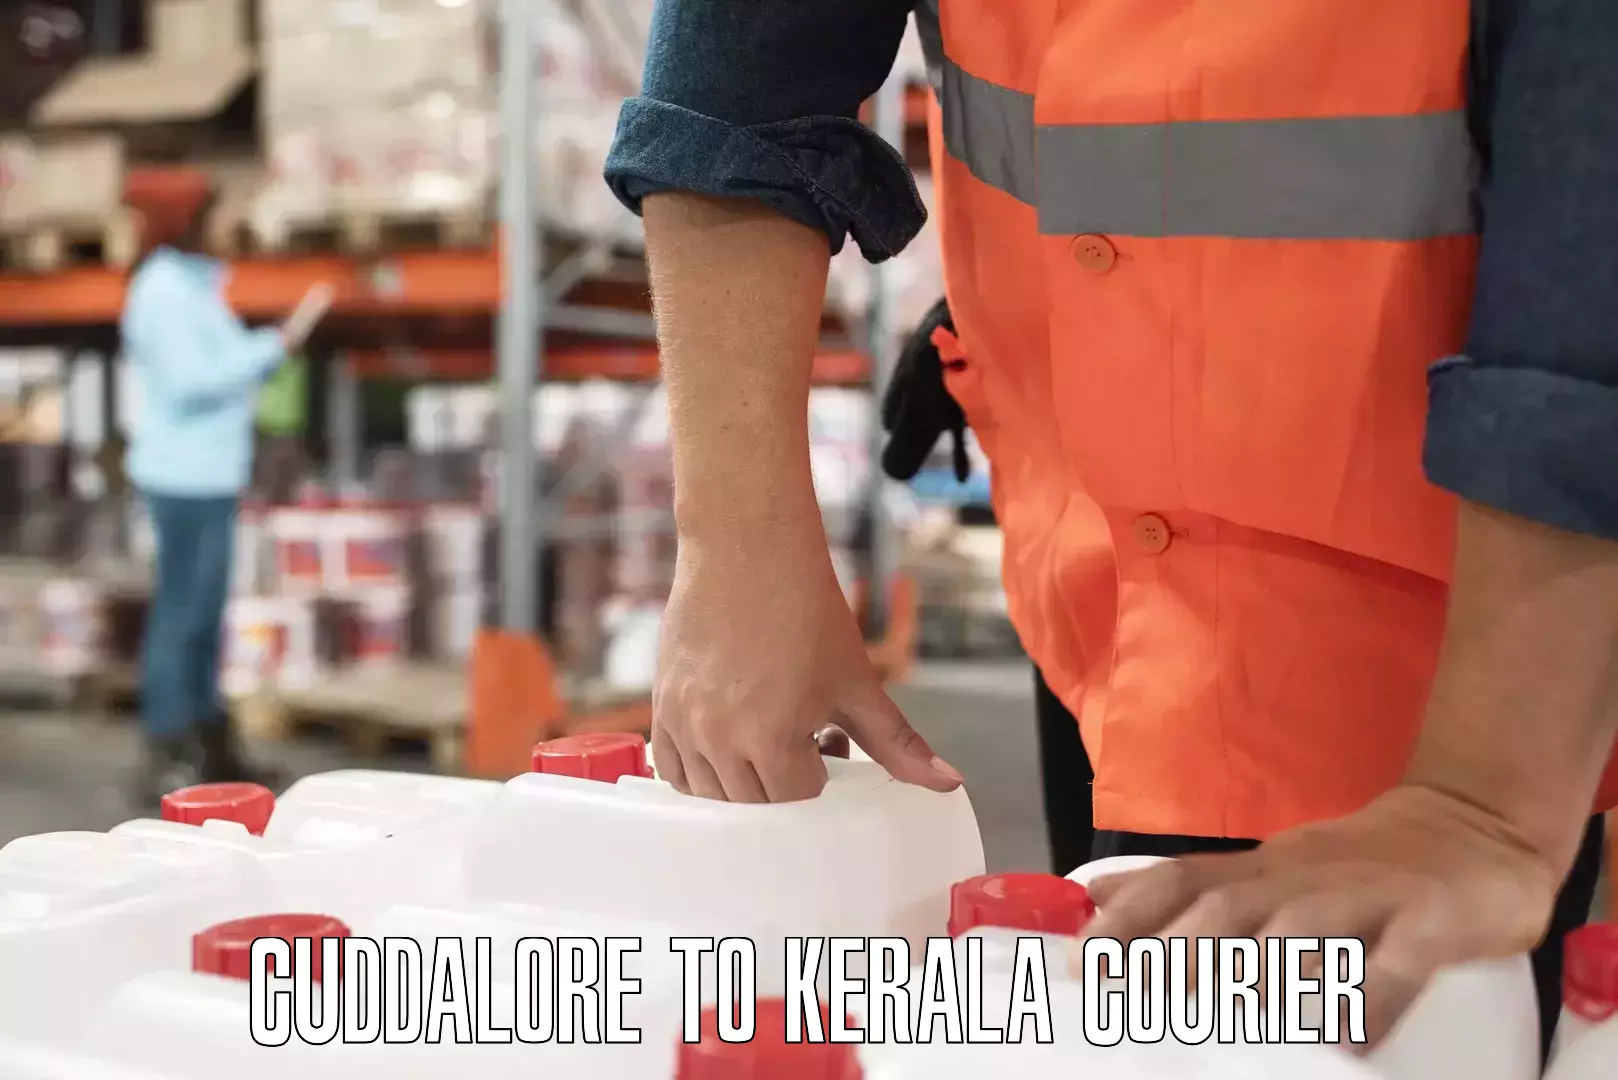 Comprehensive logistics solutions Cuddalore to Kerala